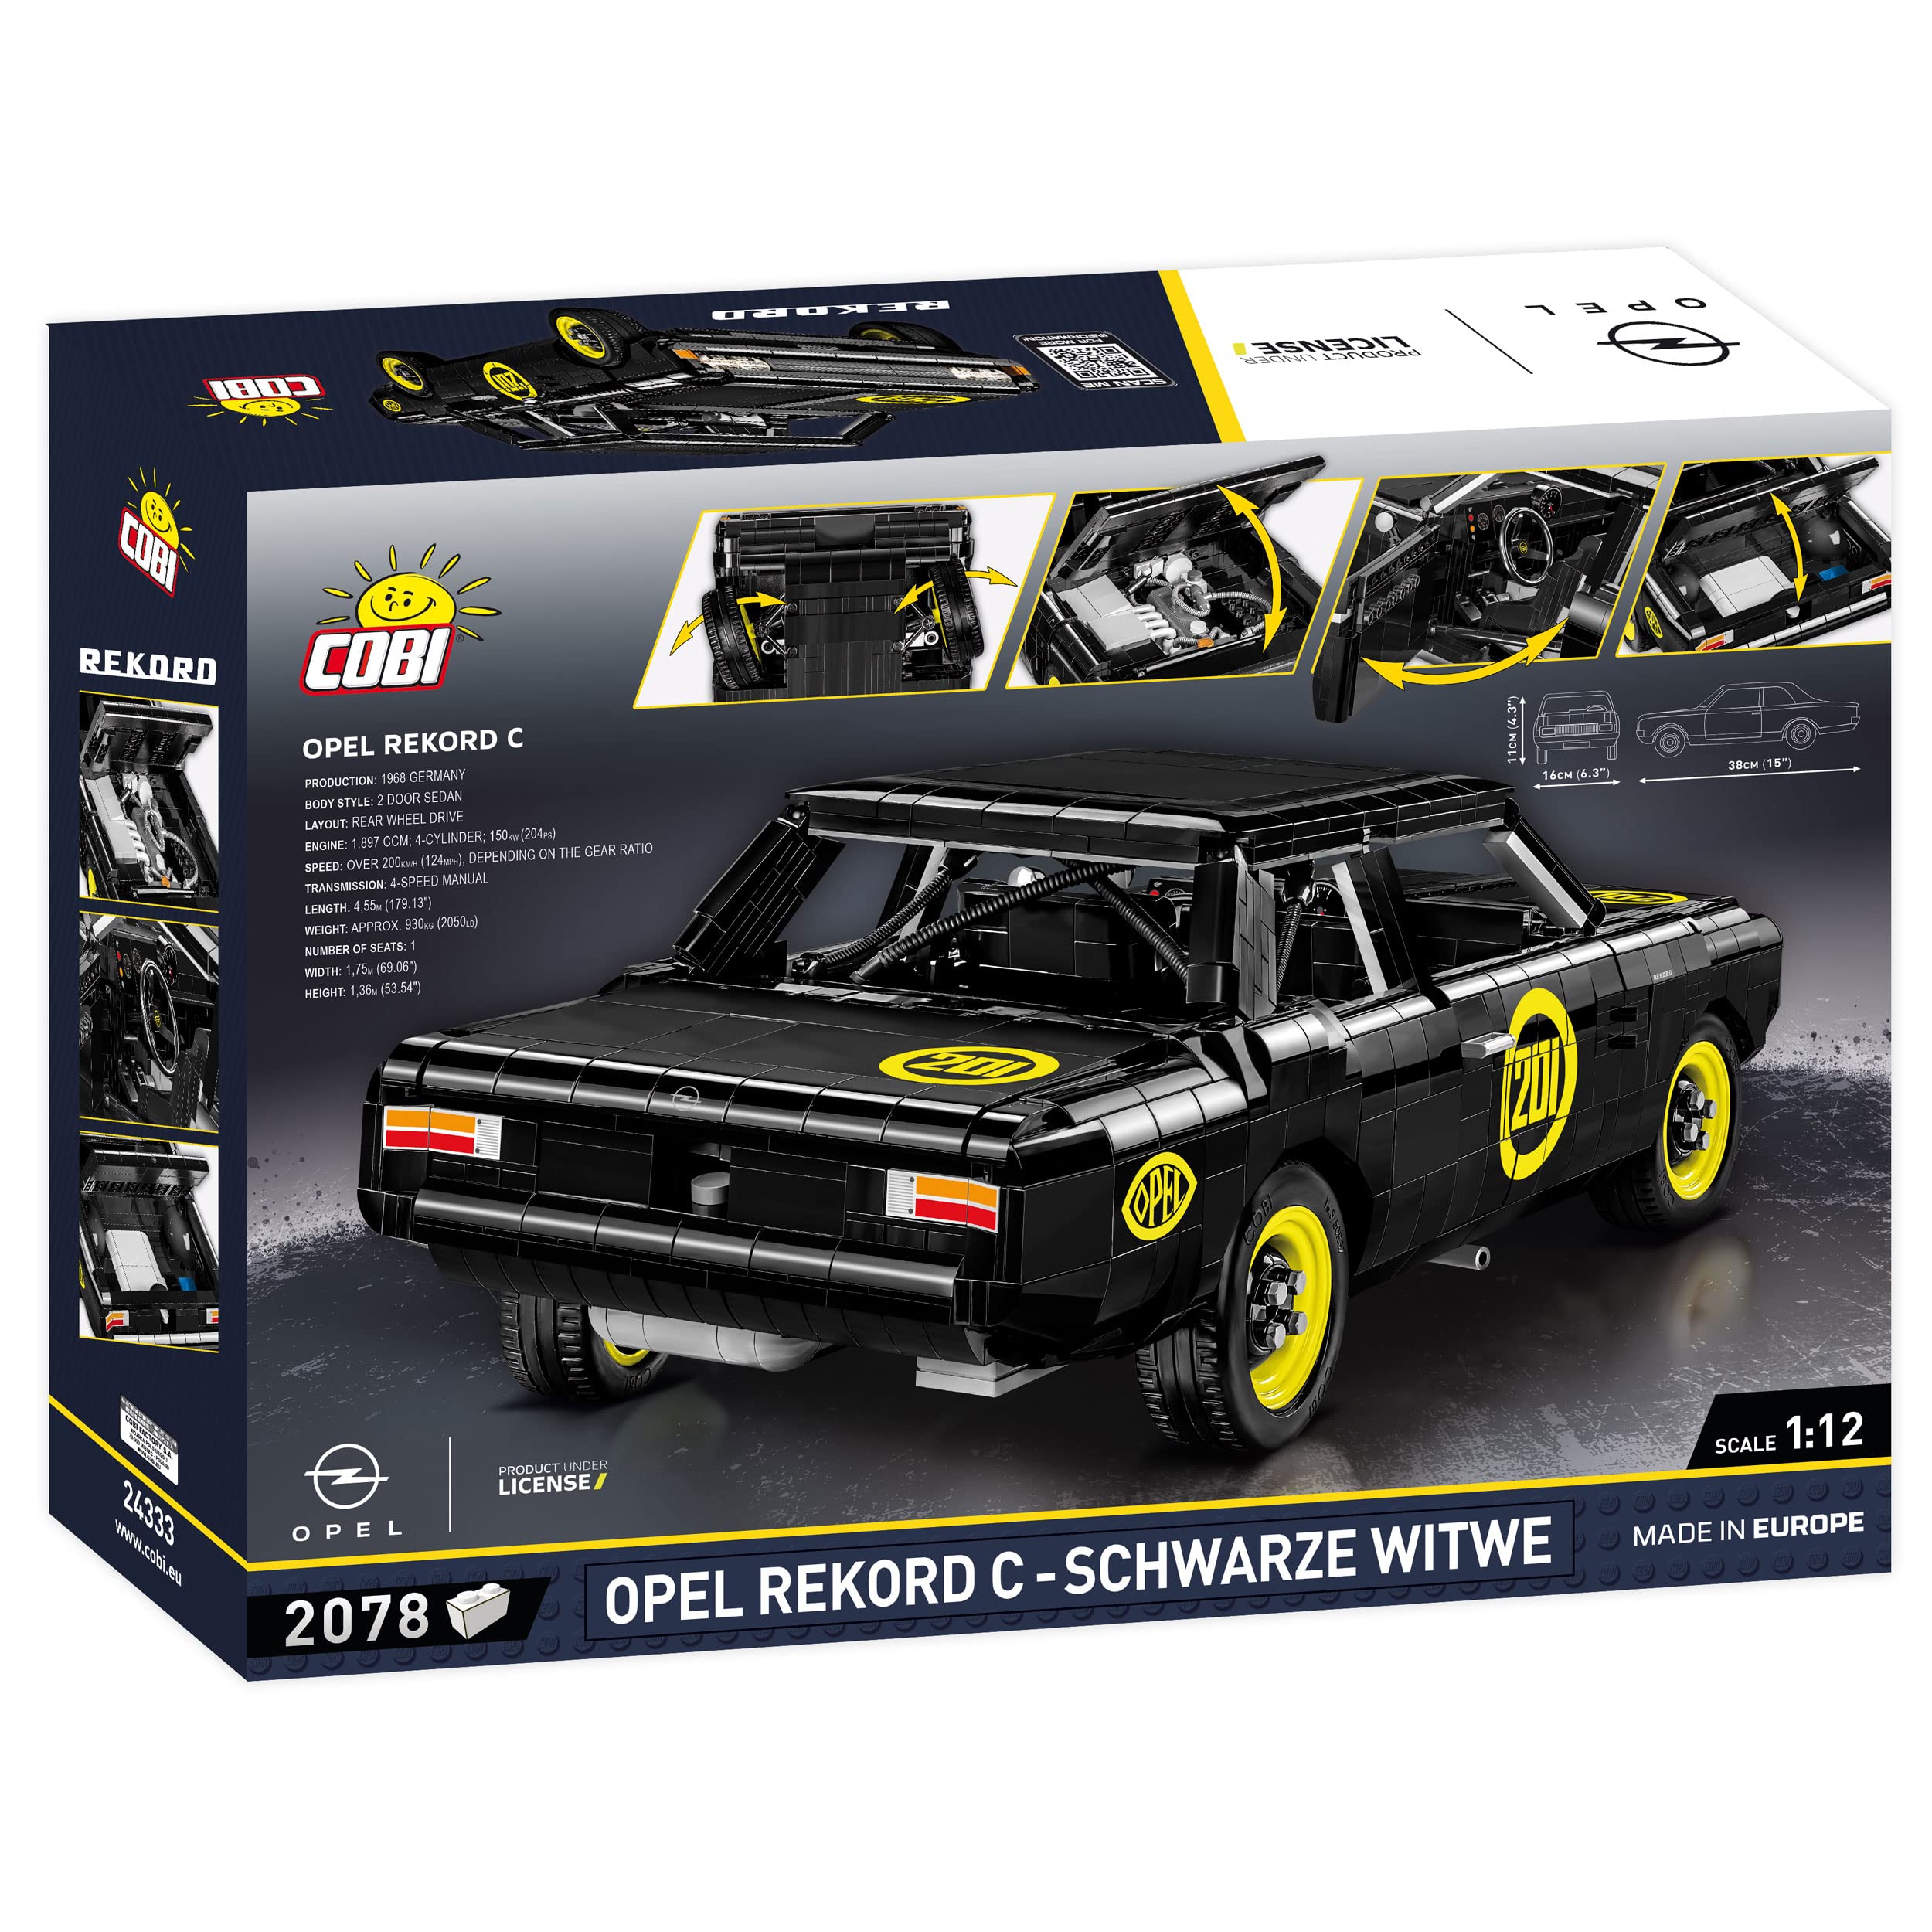 COBI Opel Rekord C-Schwarze Witwe,Black,24333